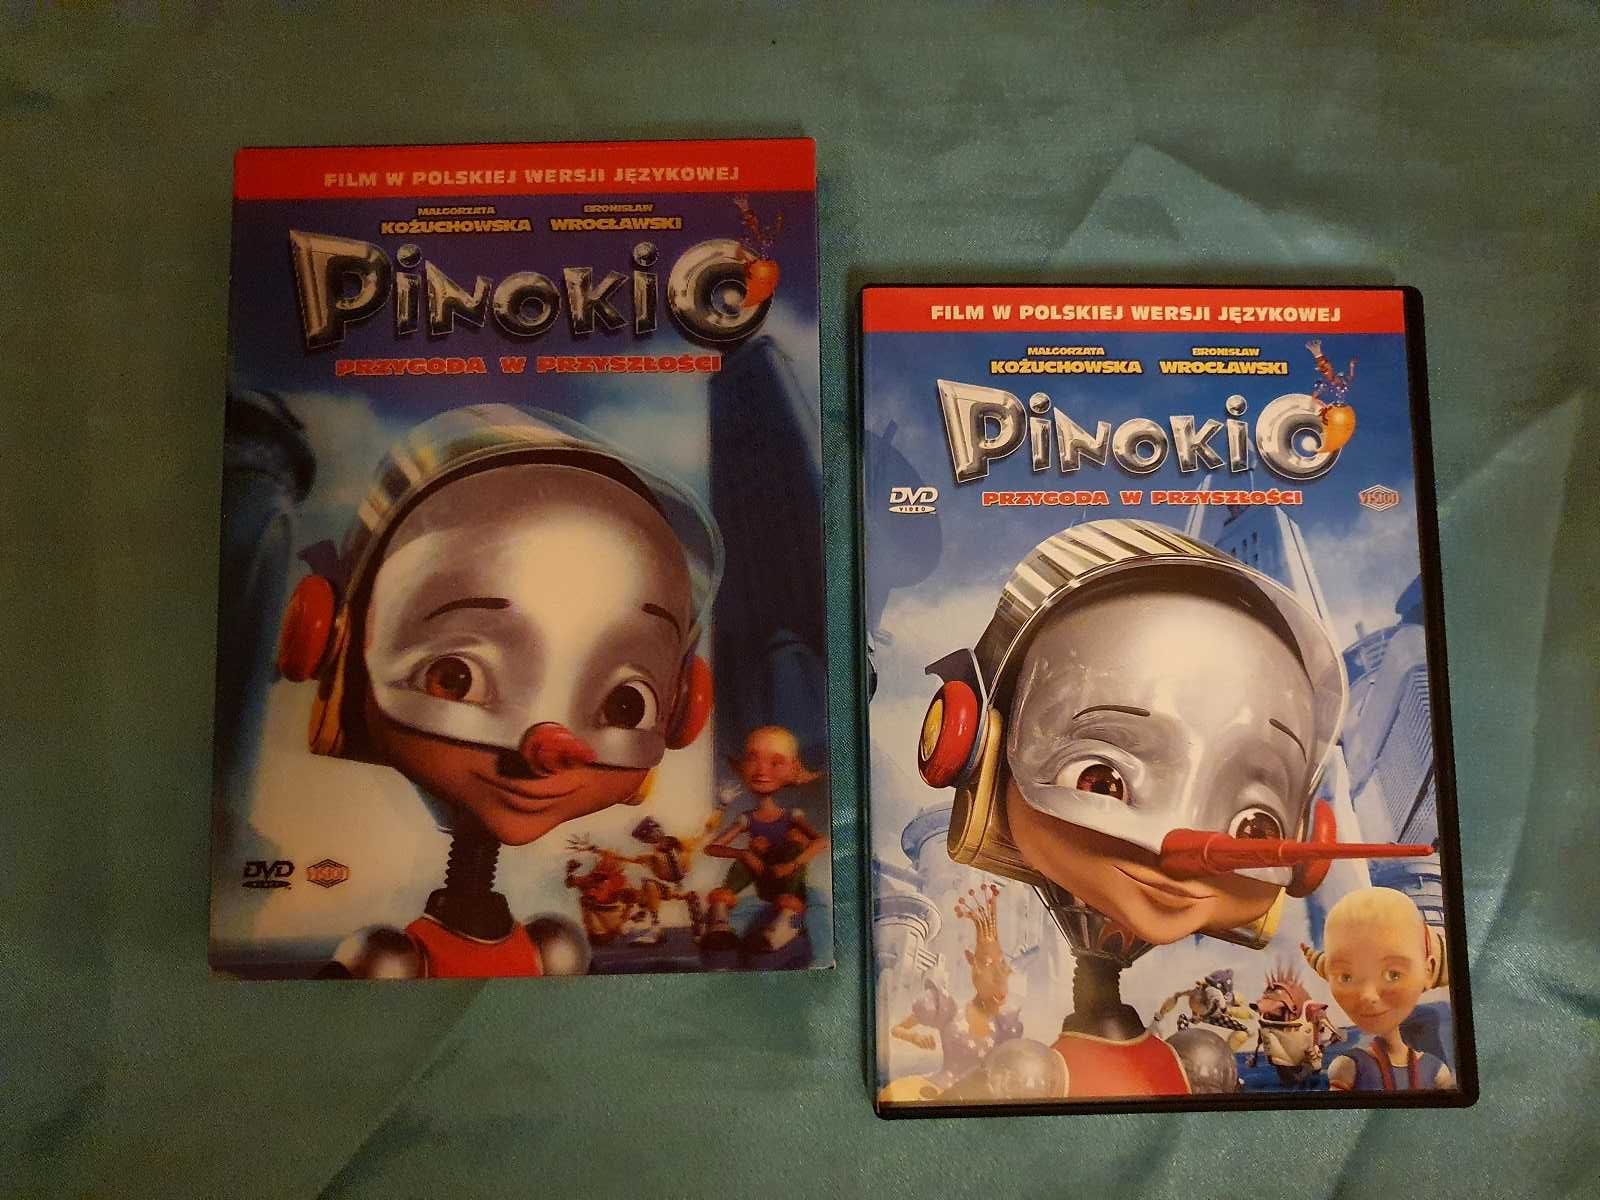 Pinokio przygoda w przyszłości DVD